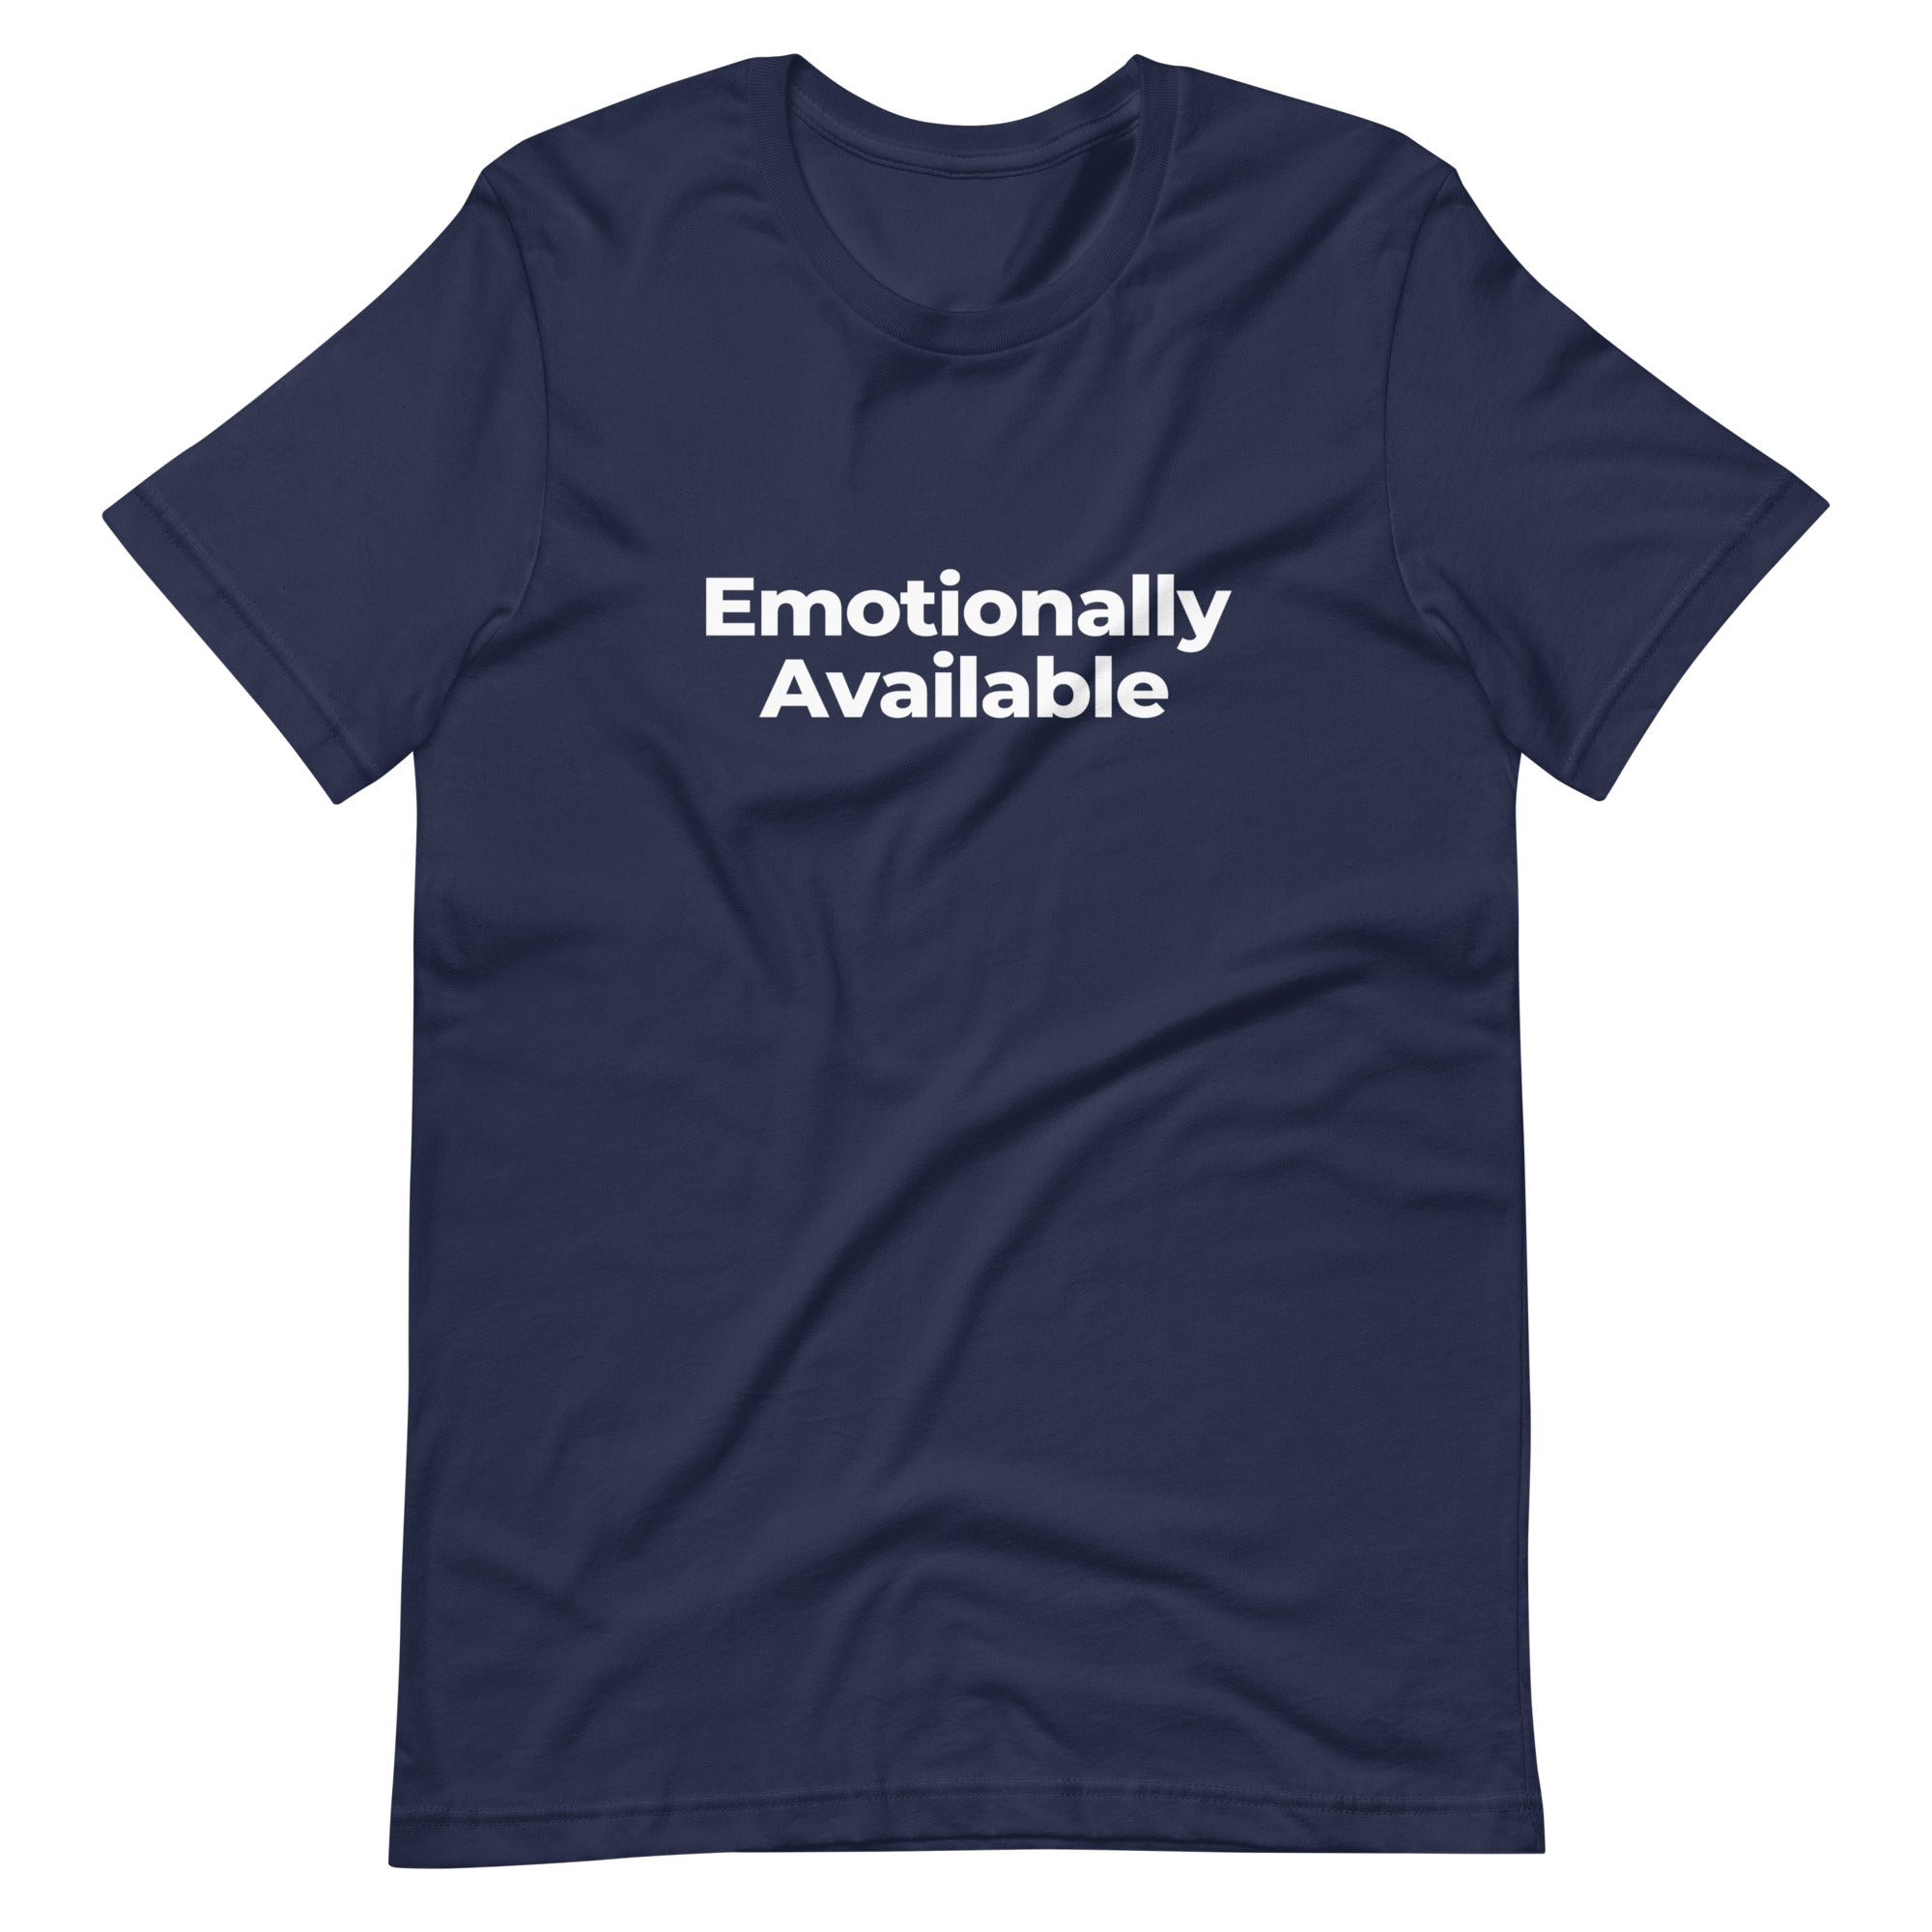 Adult Unisex "Emotionally Available" T-Shirt